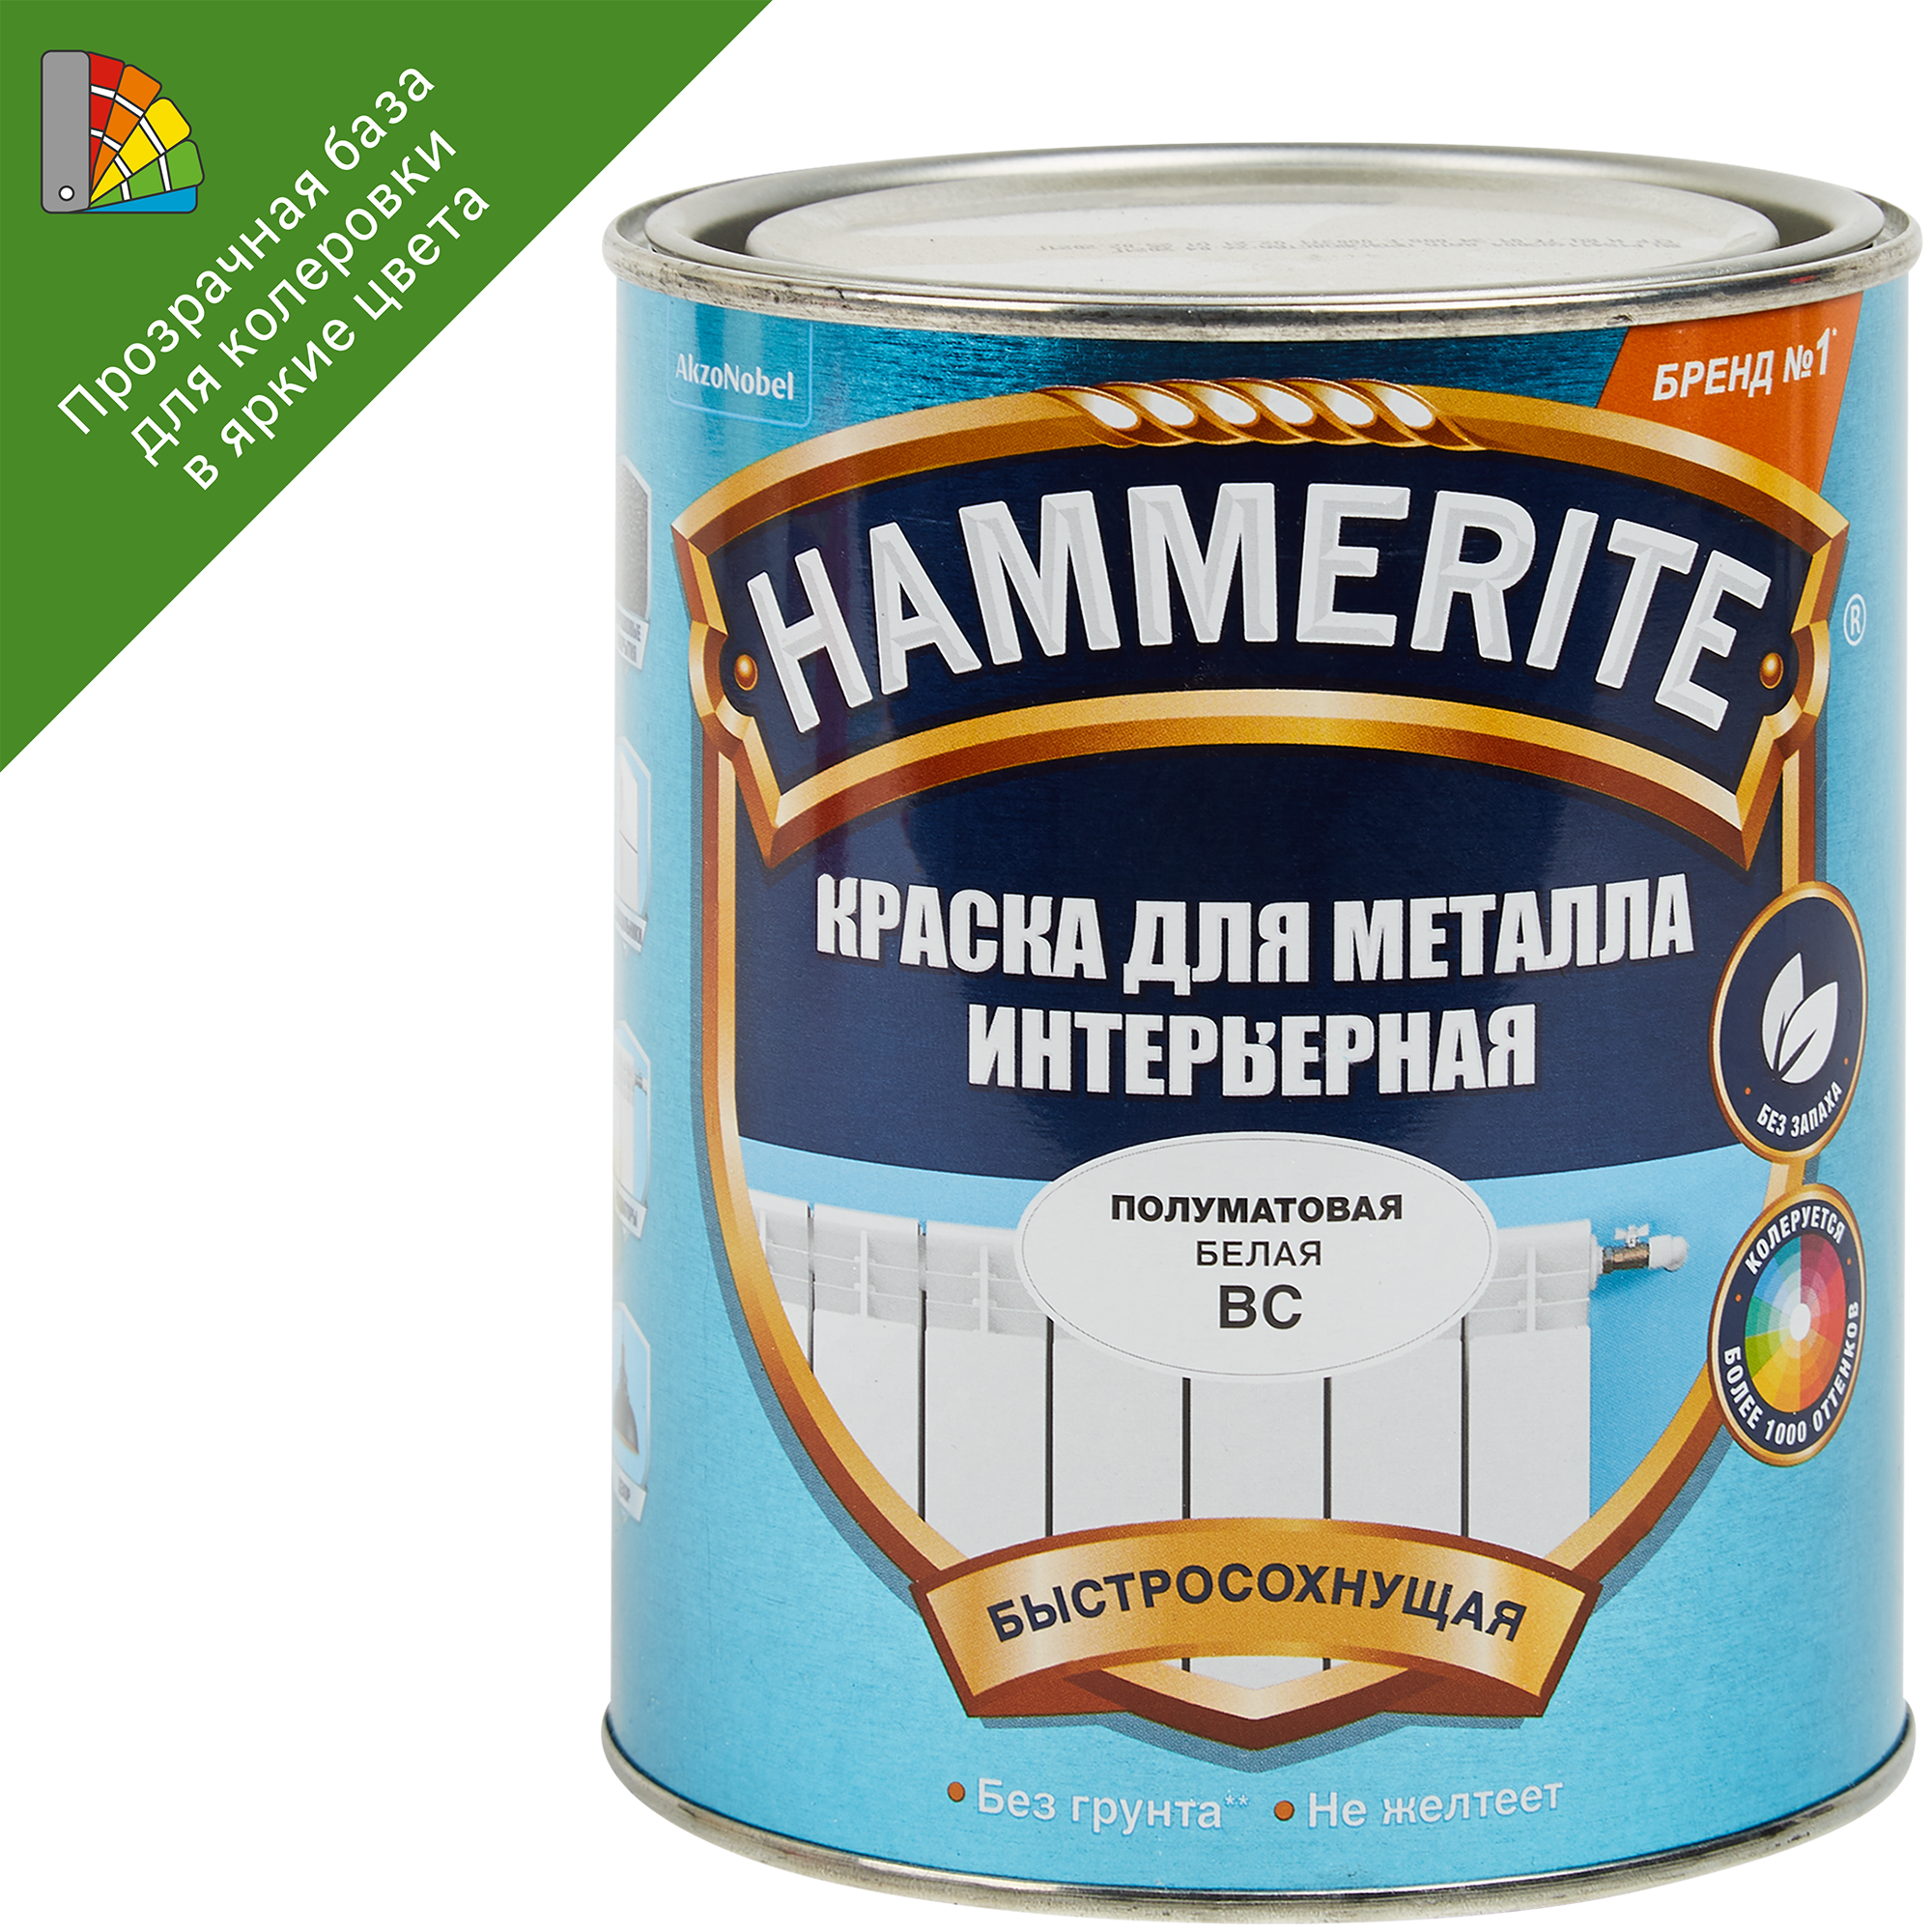 Hammerite rust beater грунт антикоррозийный коричневый для черных металлов фото 83